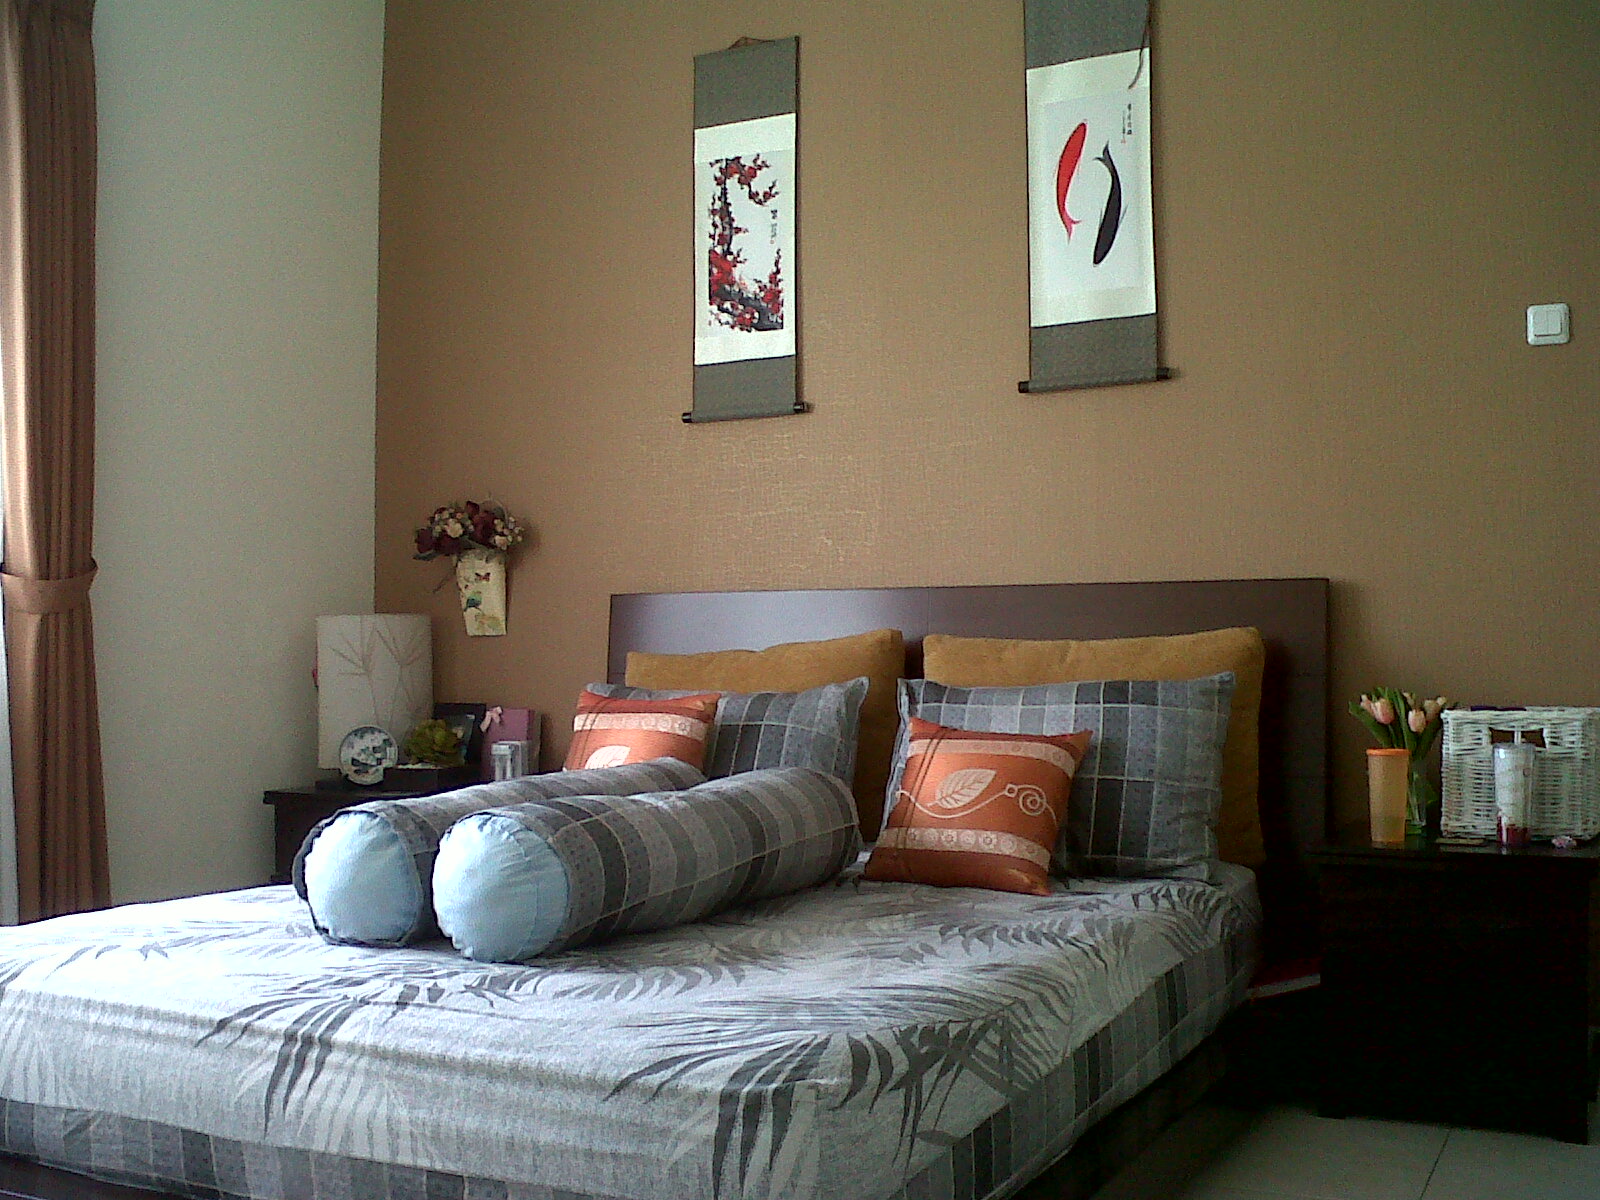 papel pintado warna coklat,dormitorio,mueble,cama,habitación,propiedad